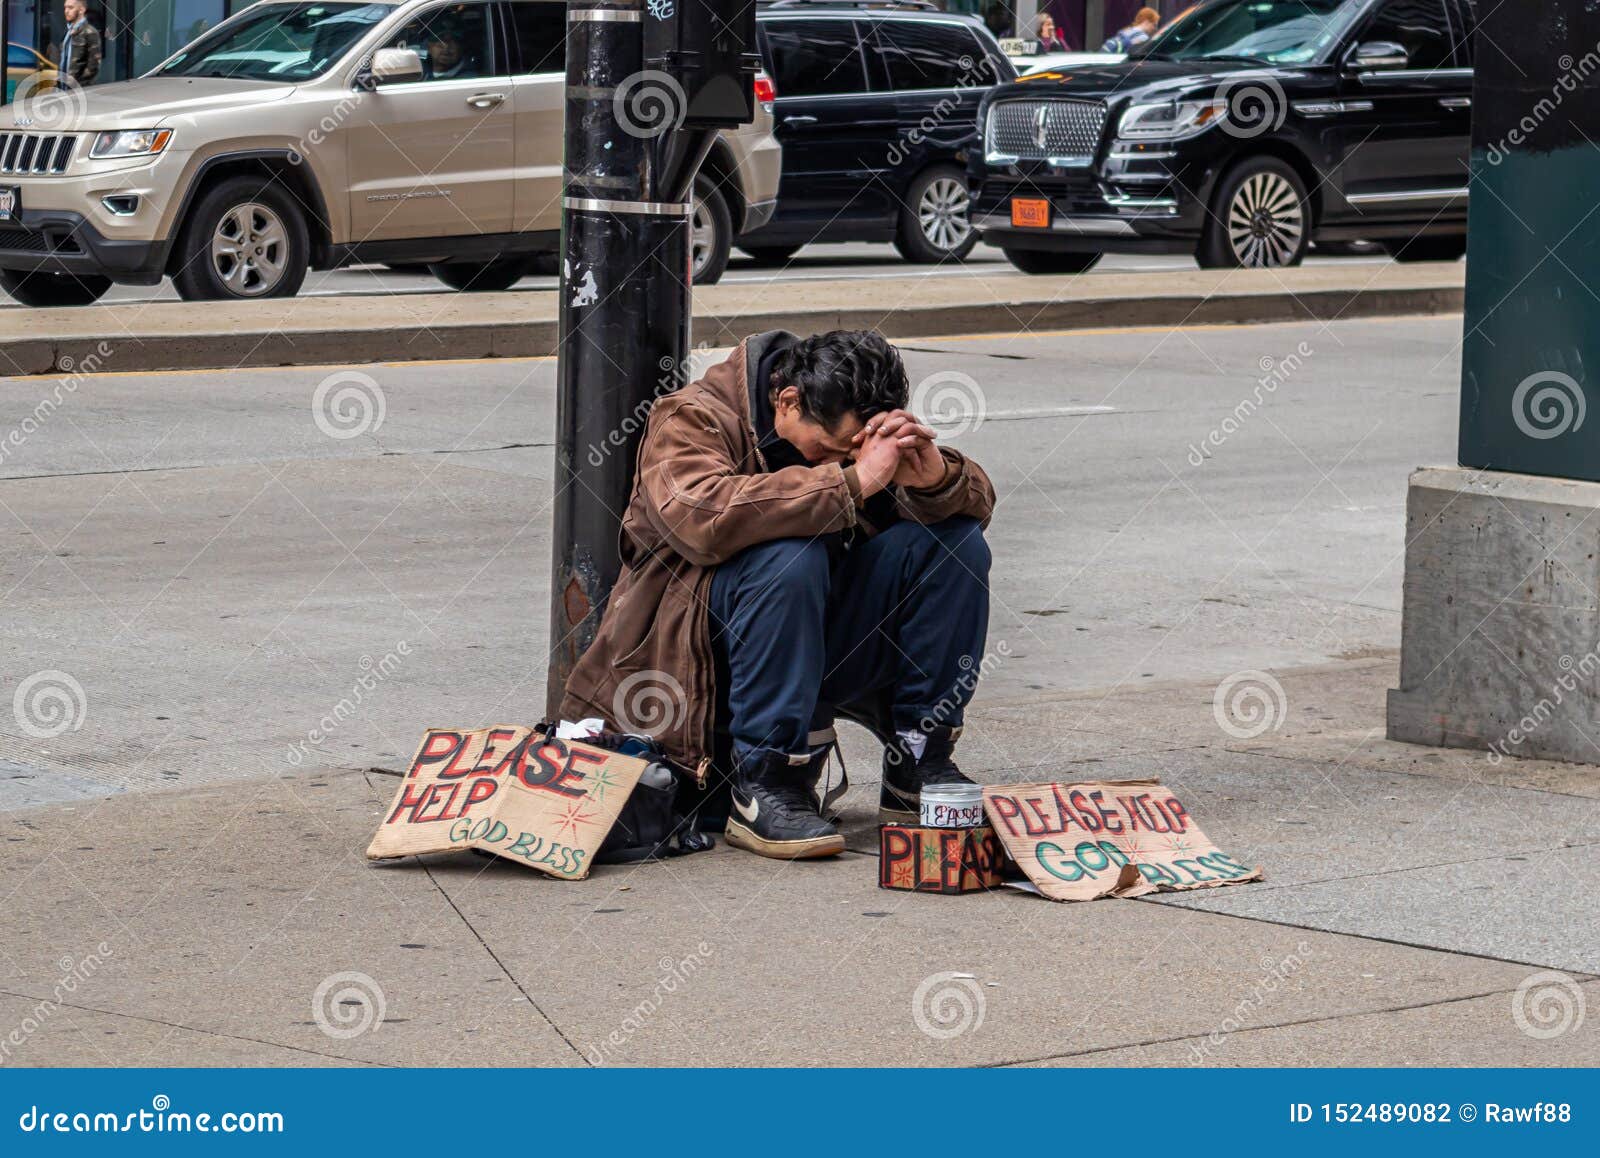 Девушка целуется с бомжами. Человек сидит на тротуаре. Попрошайки на улицах города.